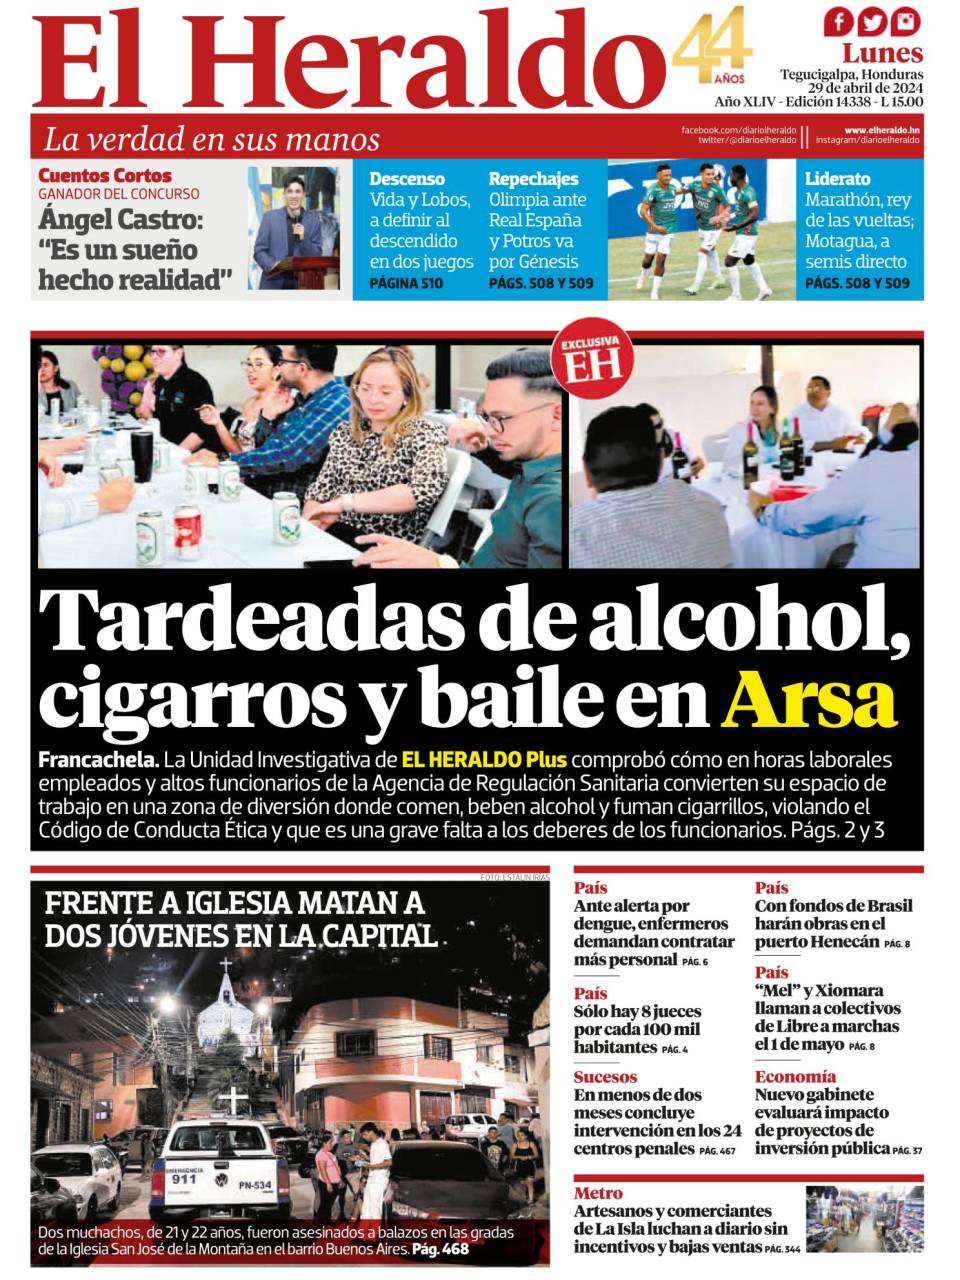 Tardeadas de alcohol, cigarros y baile en Arsa